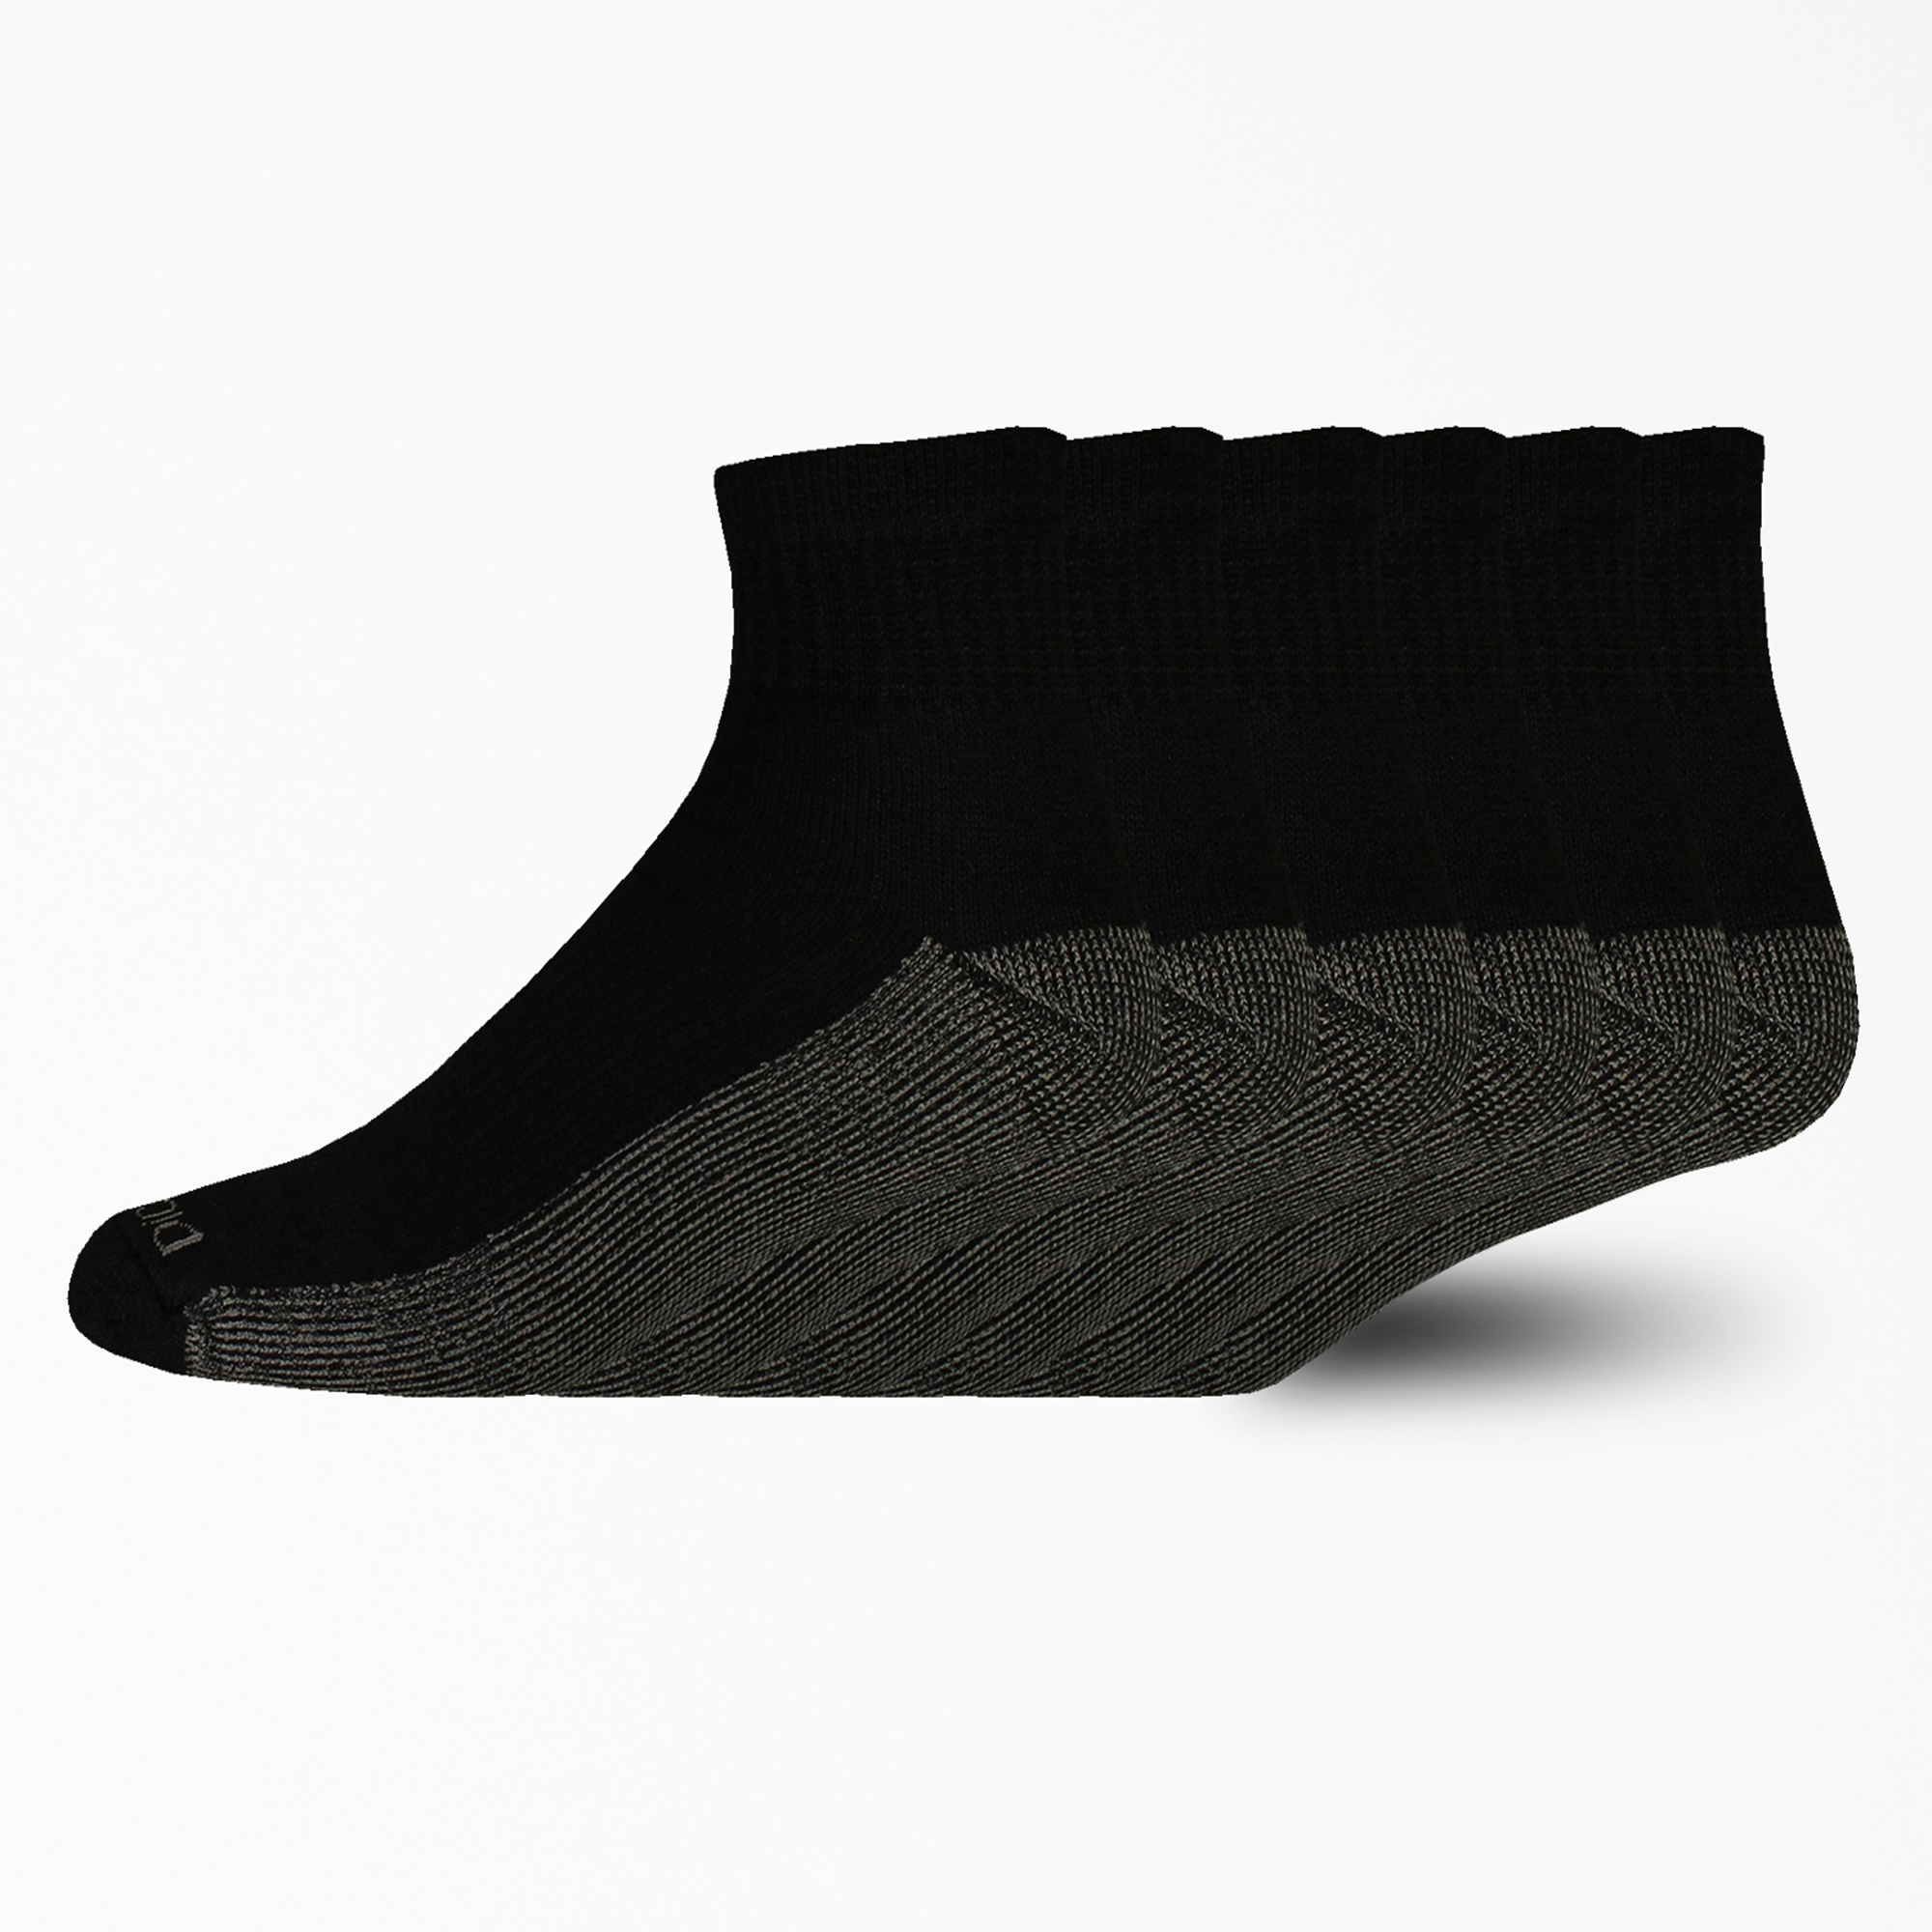 Moisture Control Quarter Socks, 6-Pack - Black (BK)